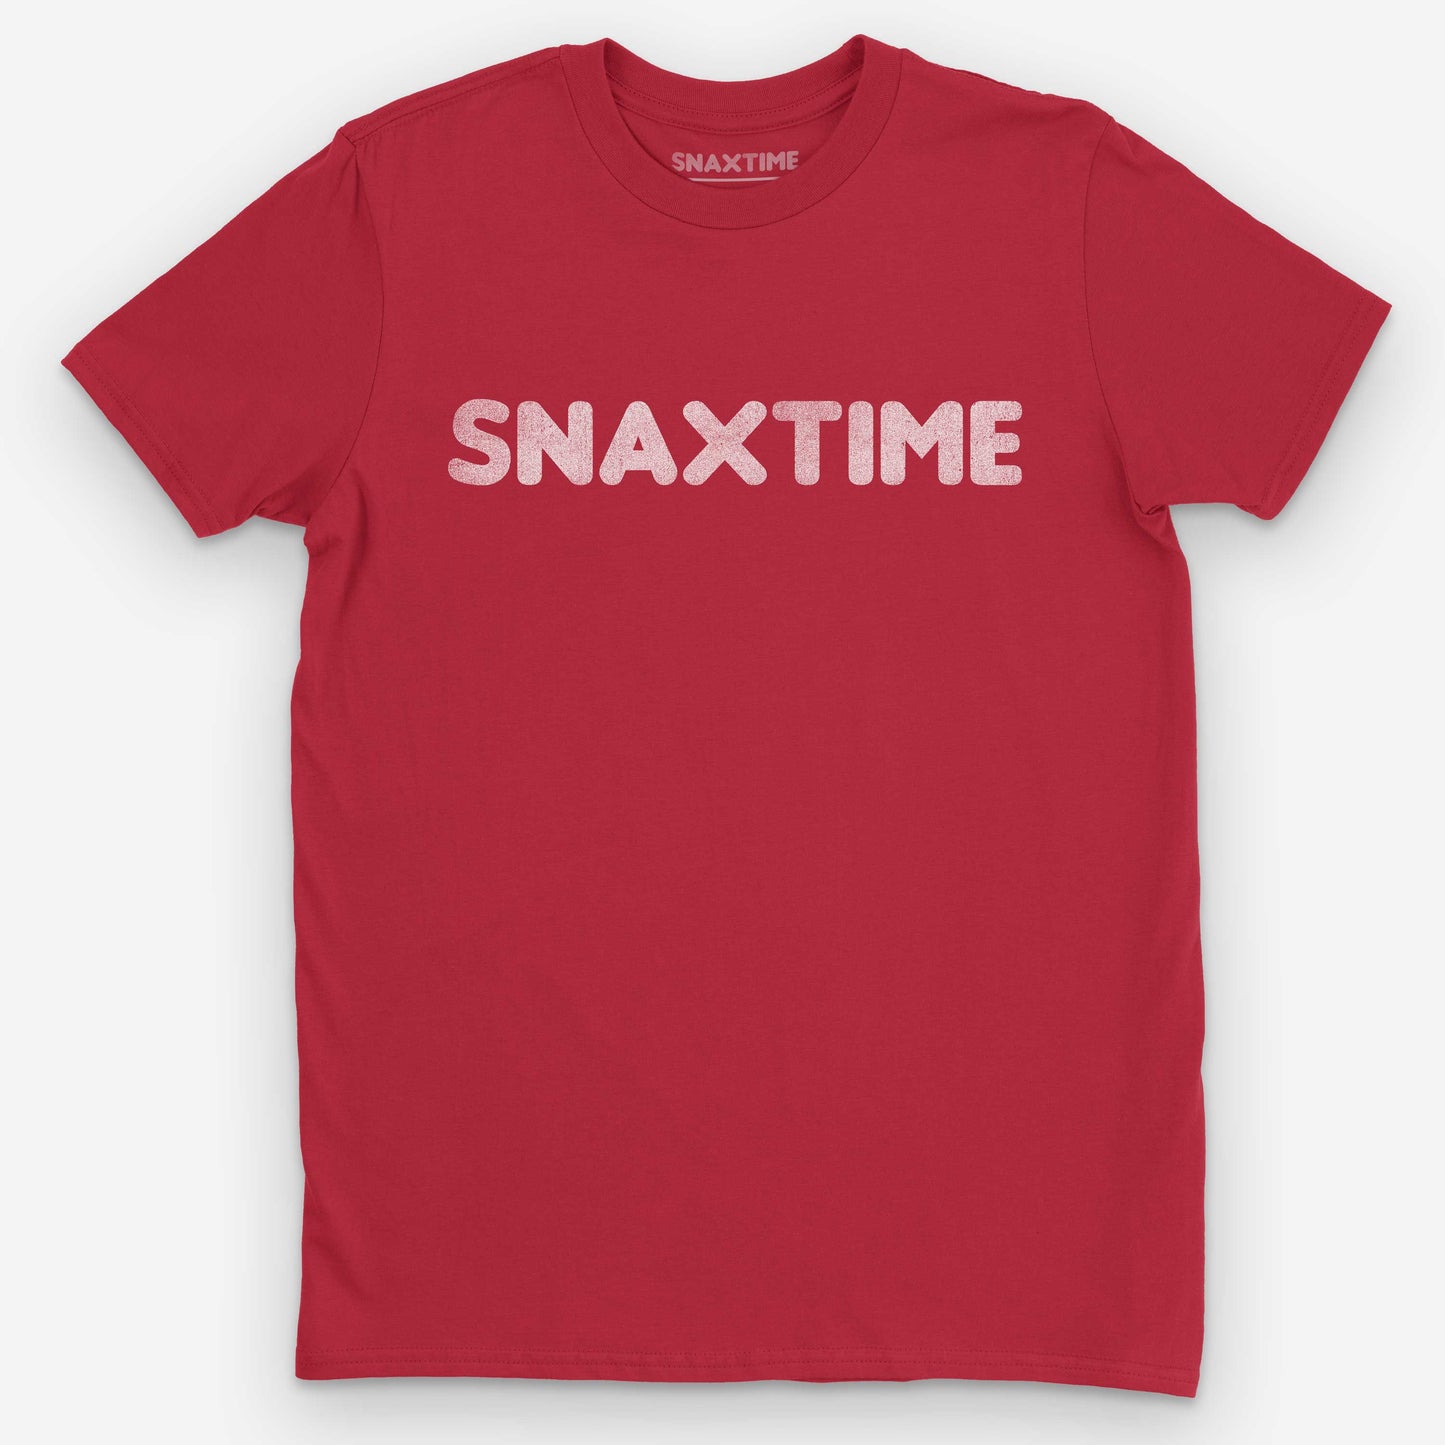 Red Snaxtime Summer Job T-Shirt by Snaxtime